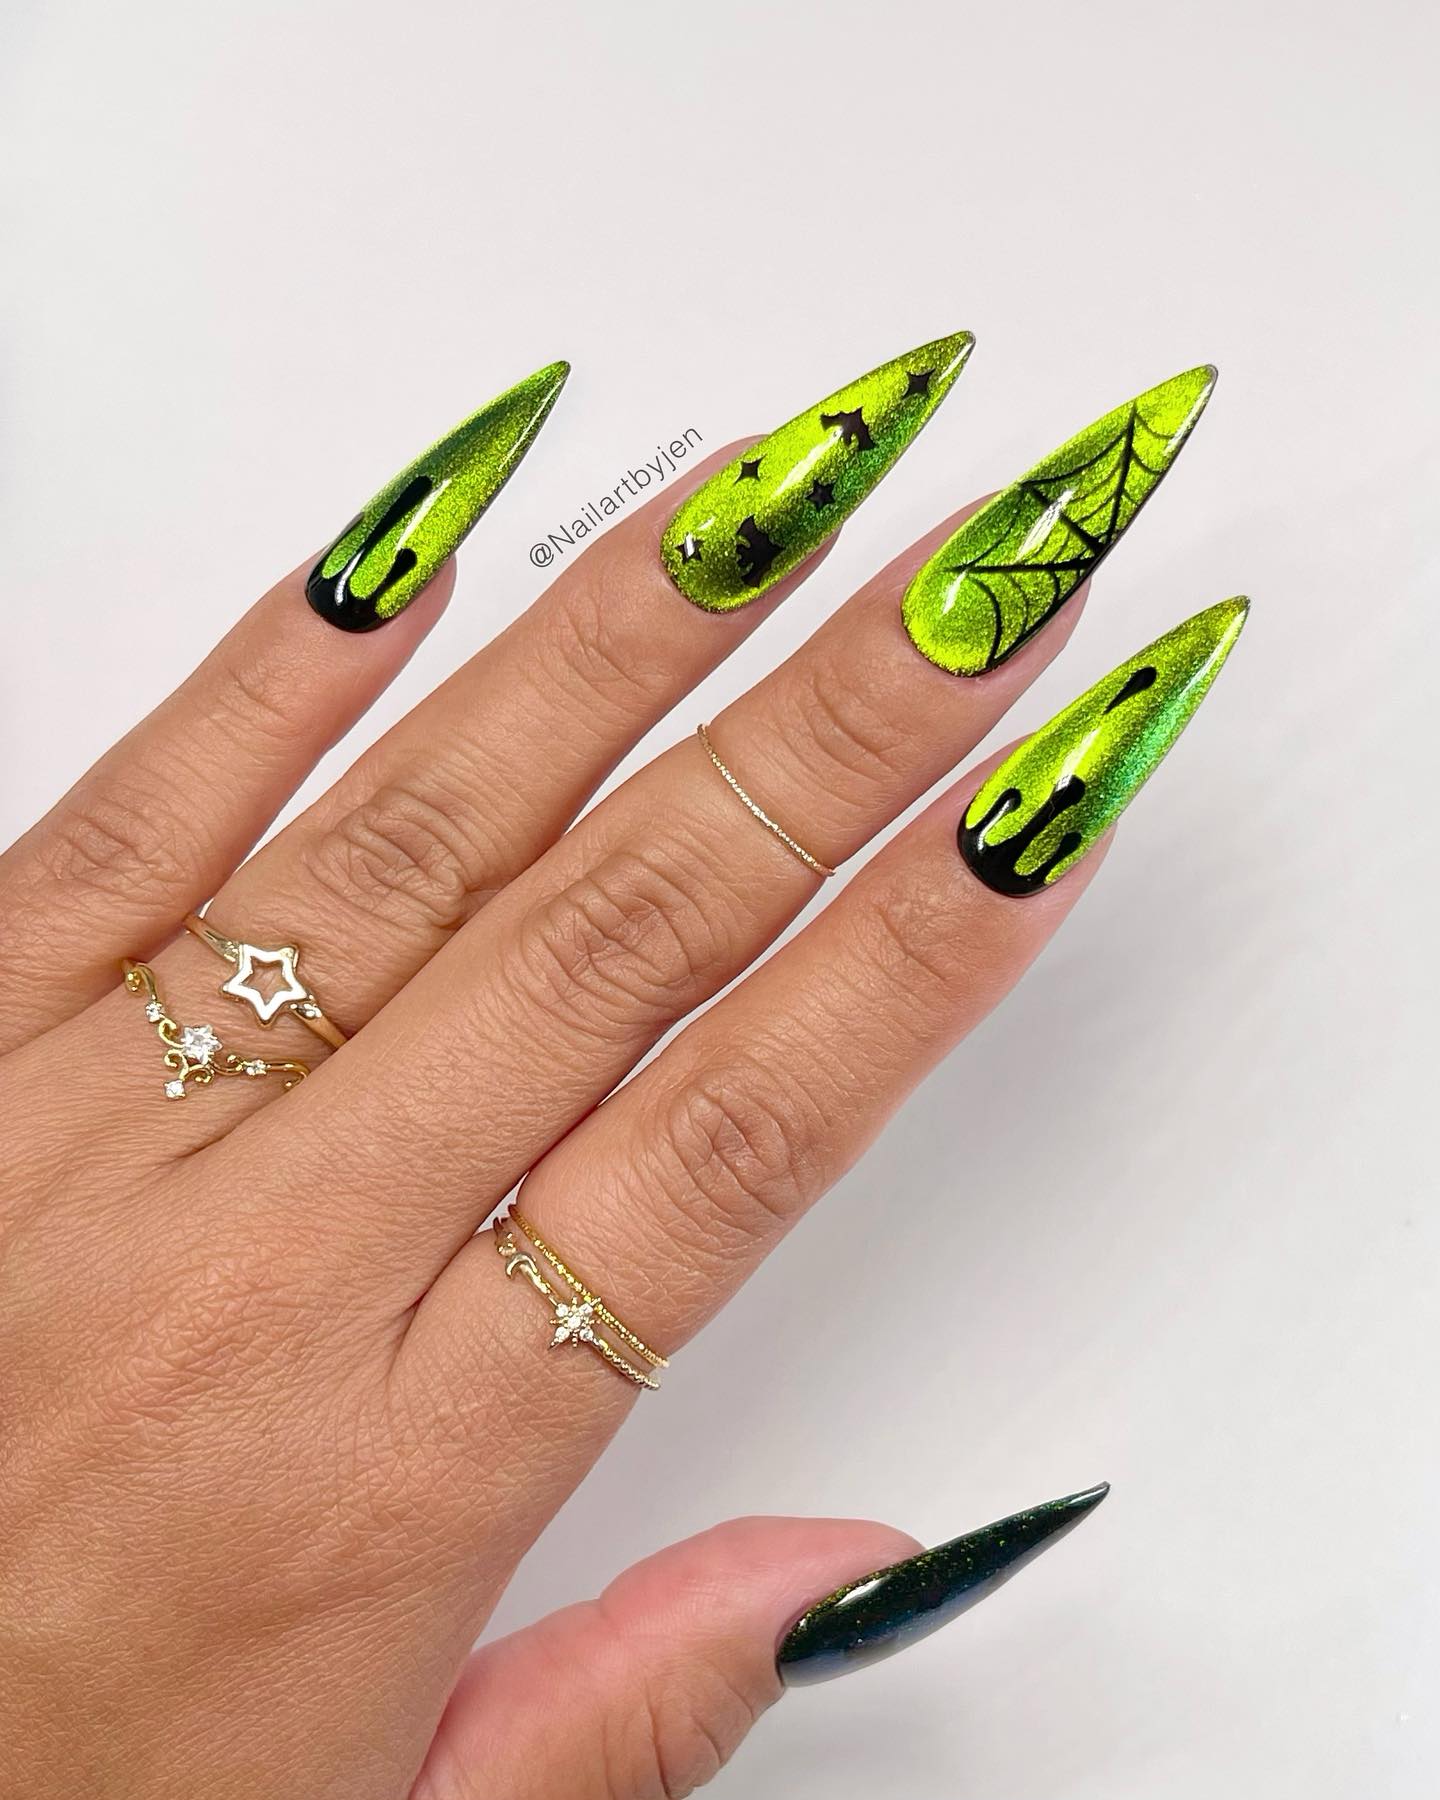 Kolejny przykład zdobienia paznokci na Halloween z obrazami tematycznymi i neonowymi zielonymi akcentami